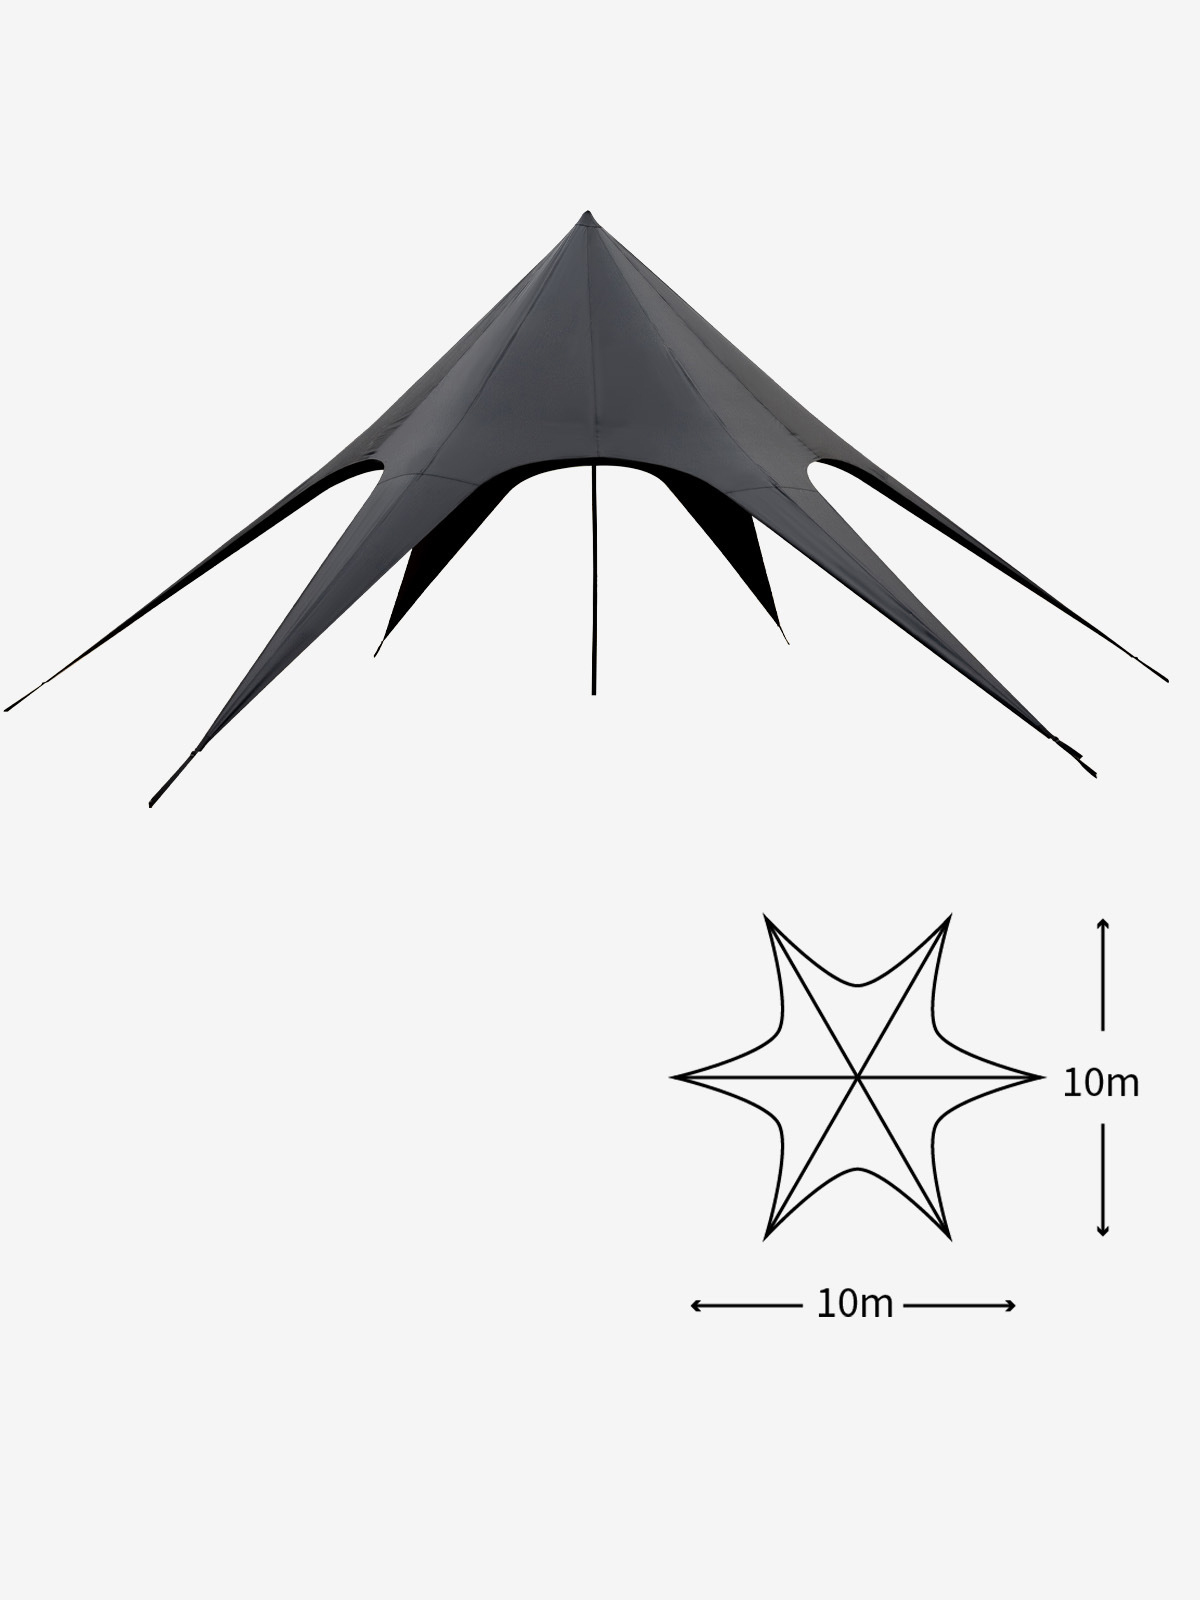 Black single peak canopy size 10*10*4 meters